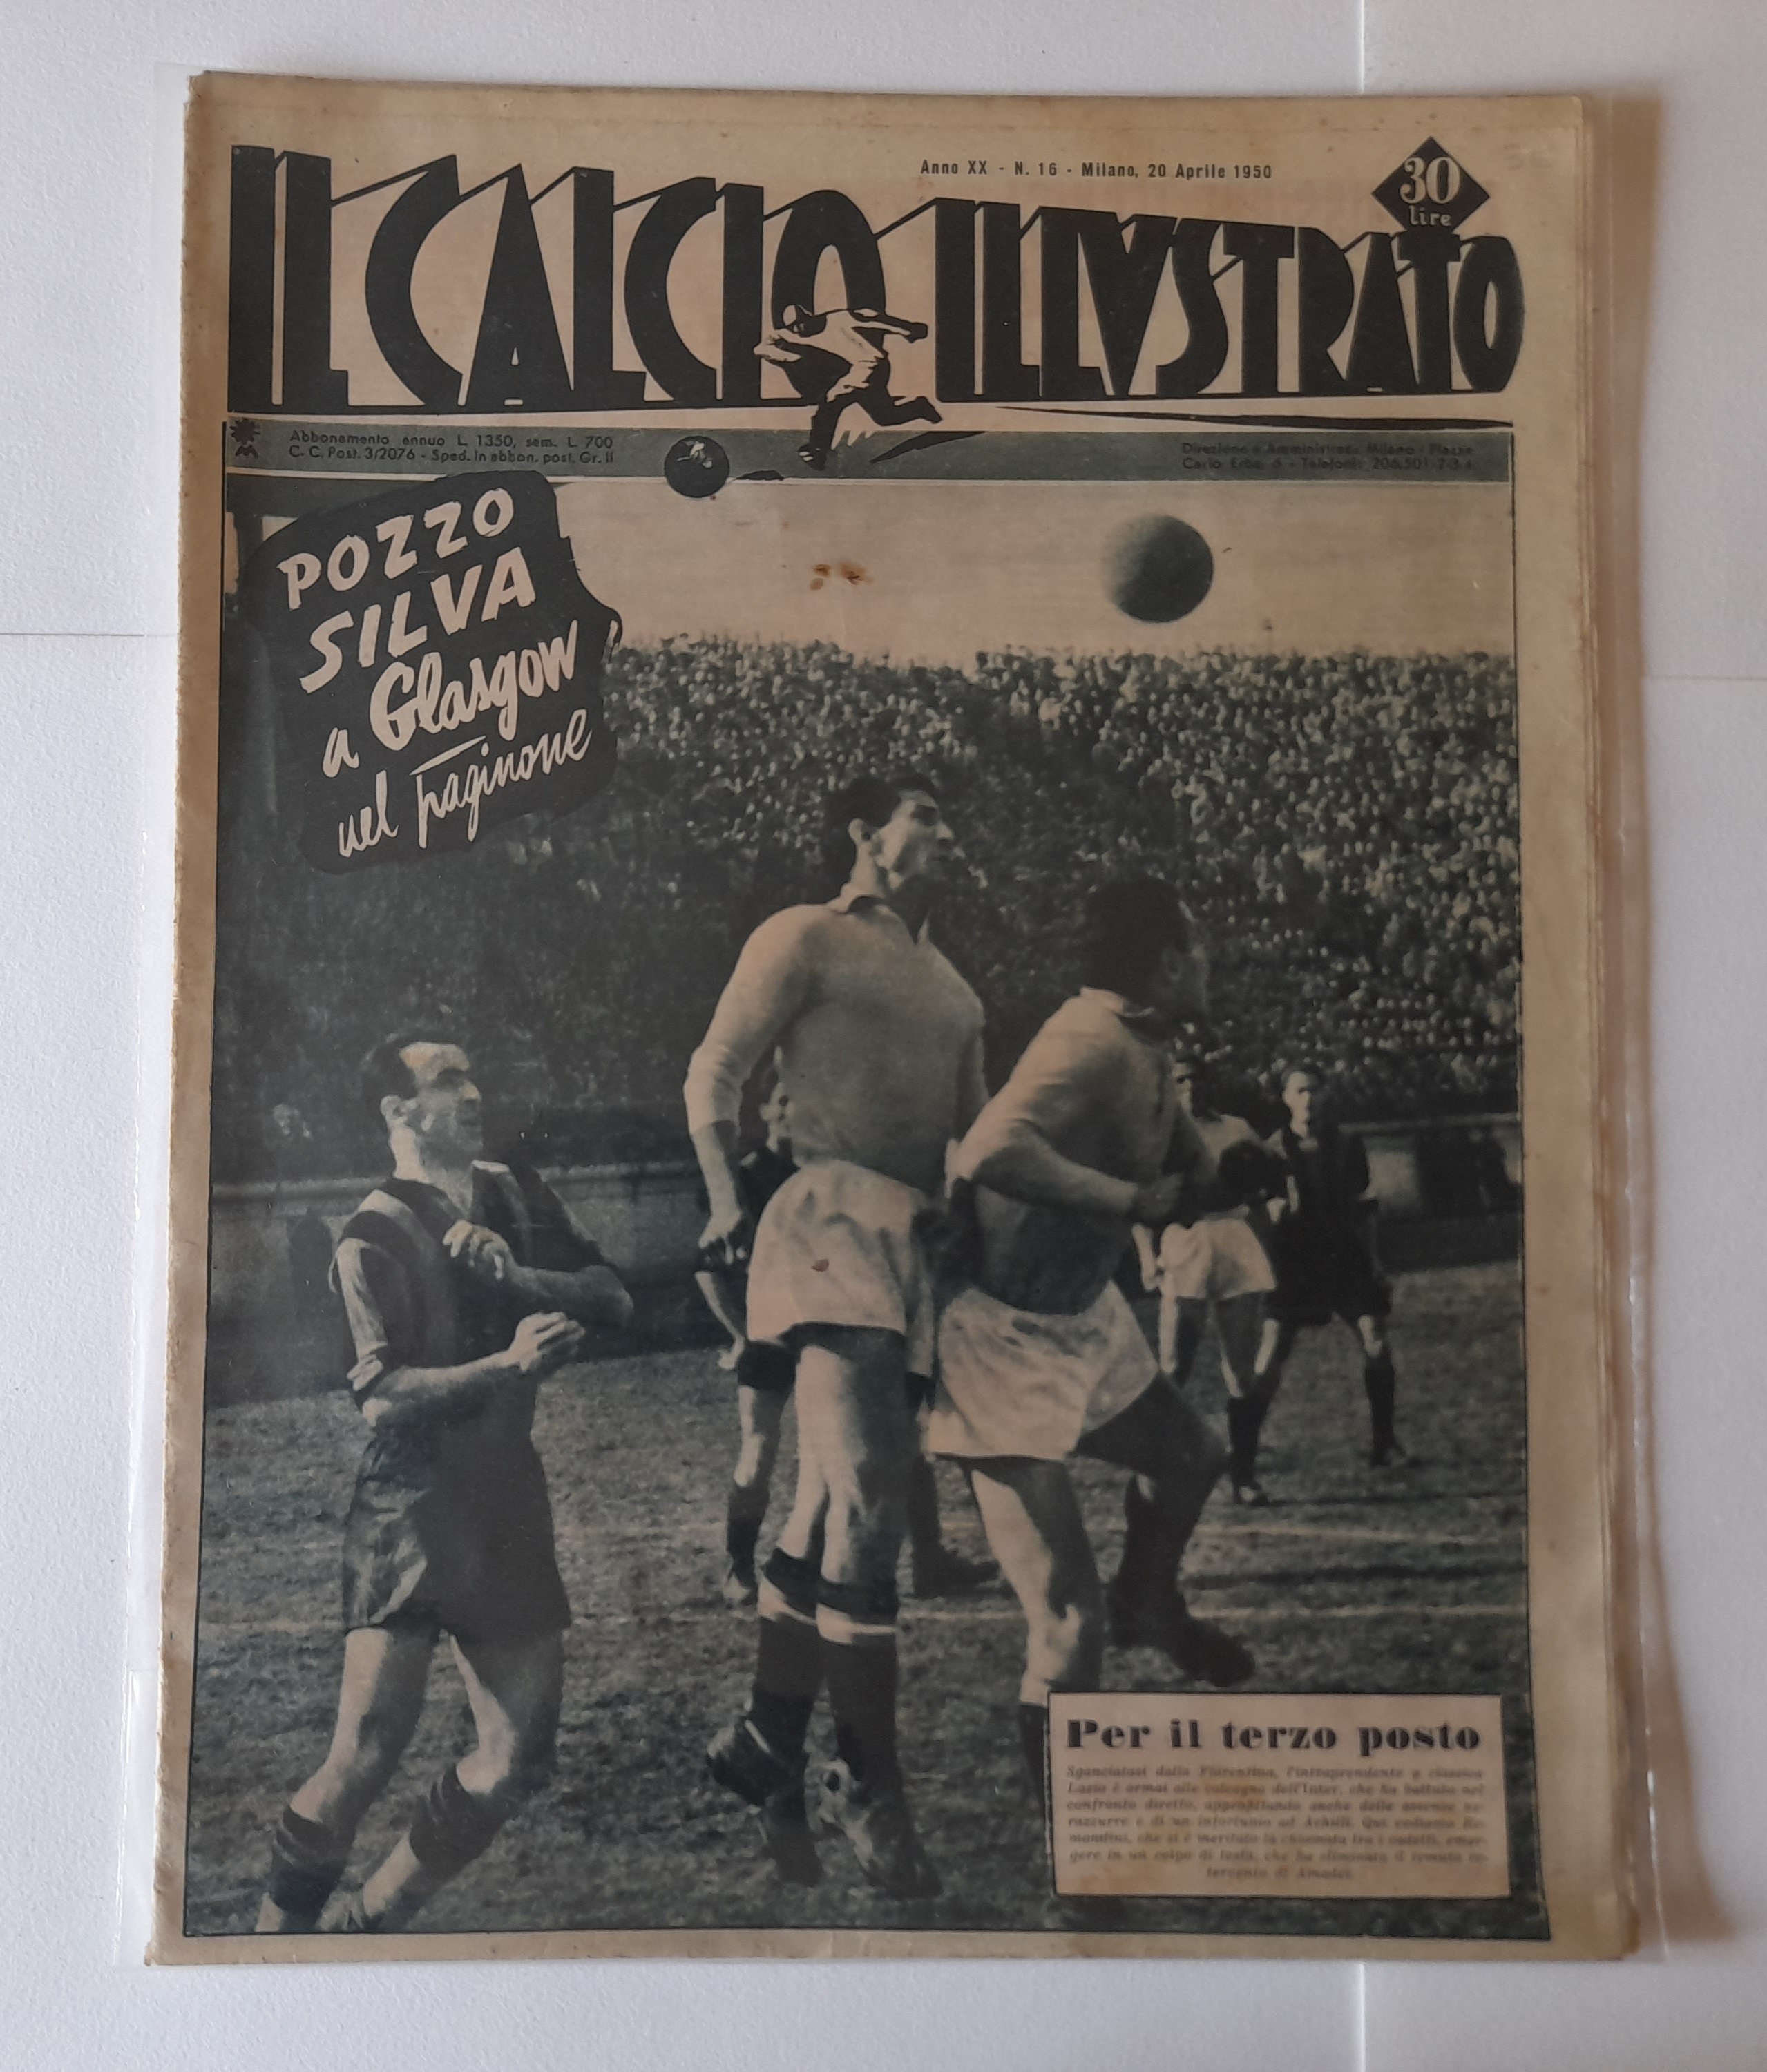 Il Calcio Illustrato 16 avril 1950 AAB 18